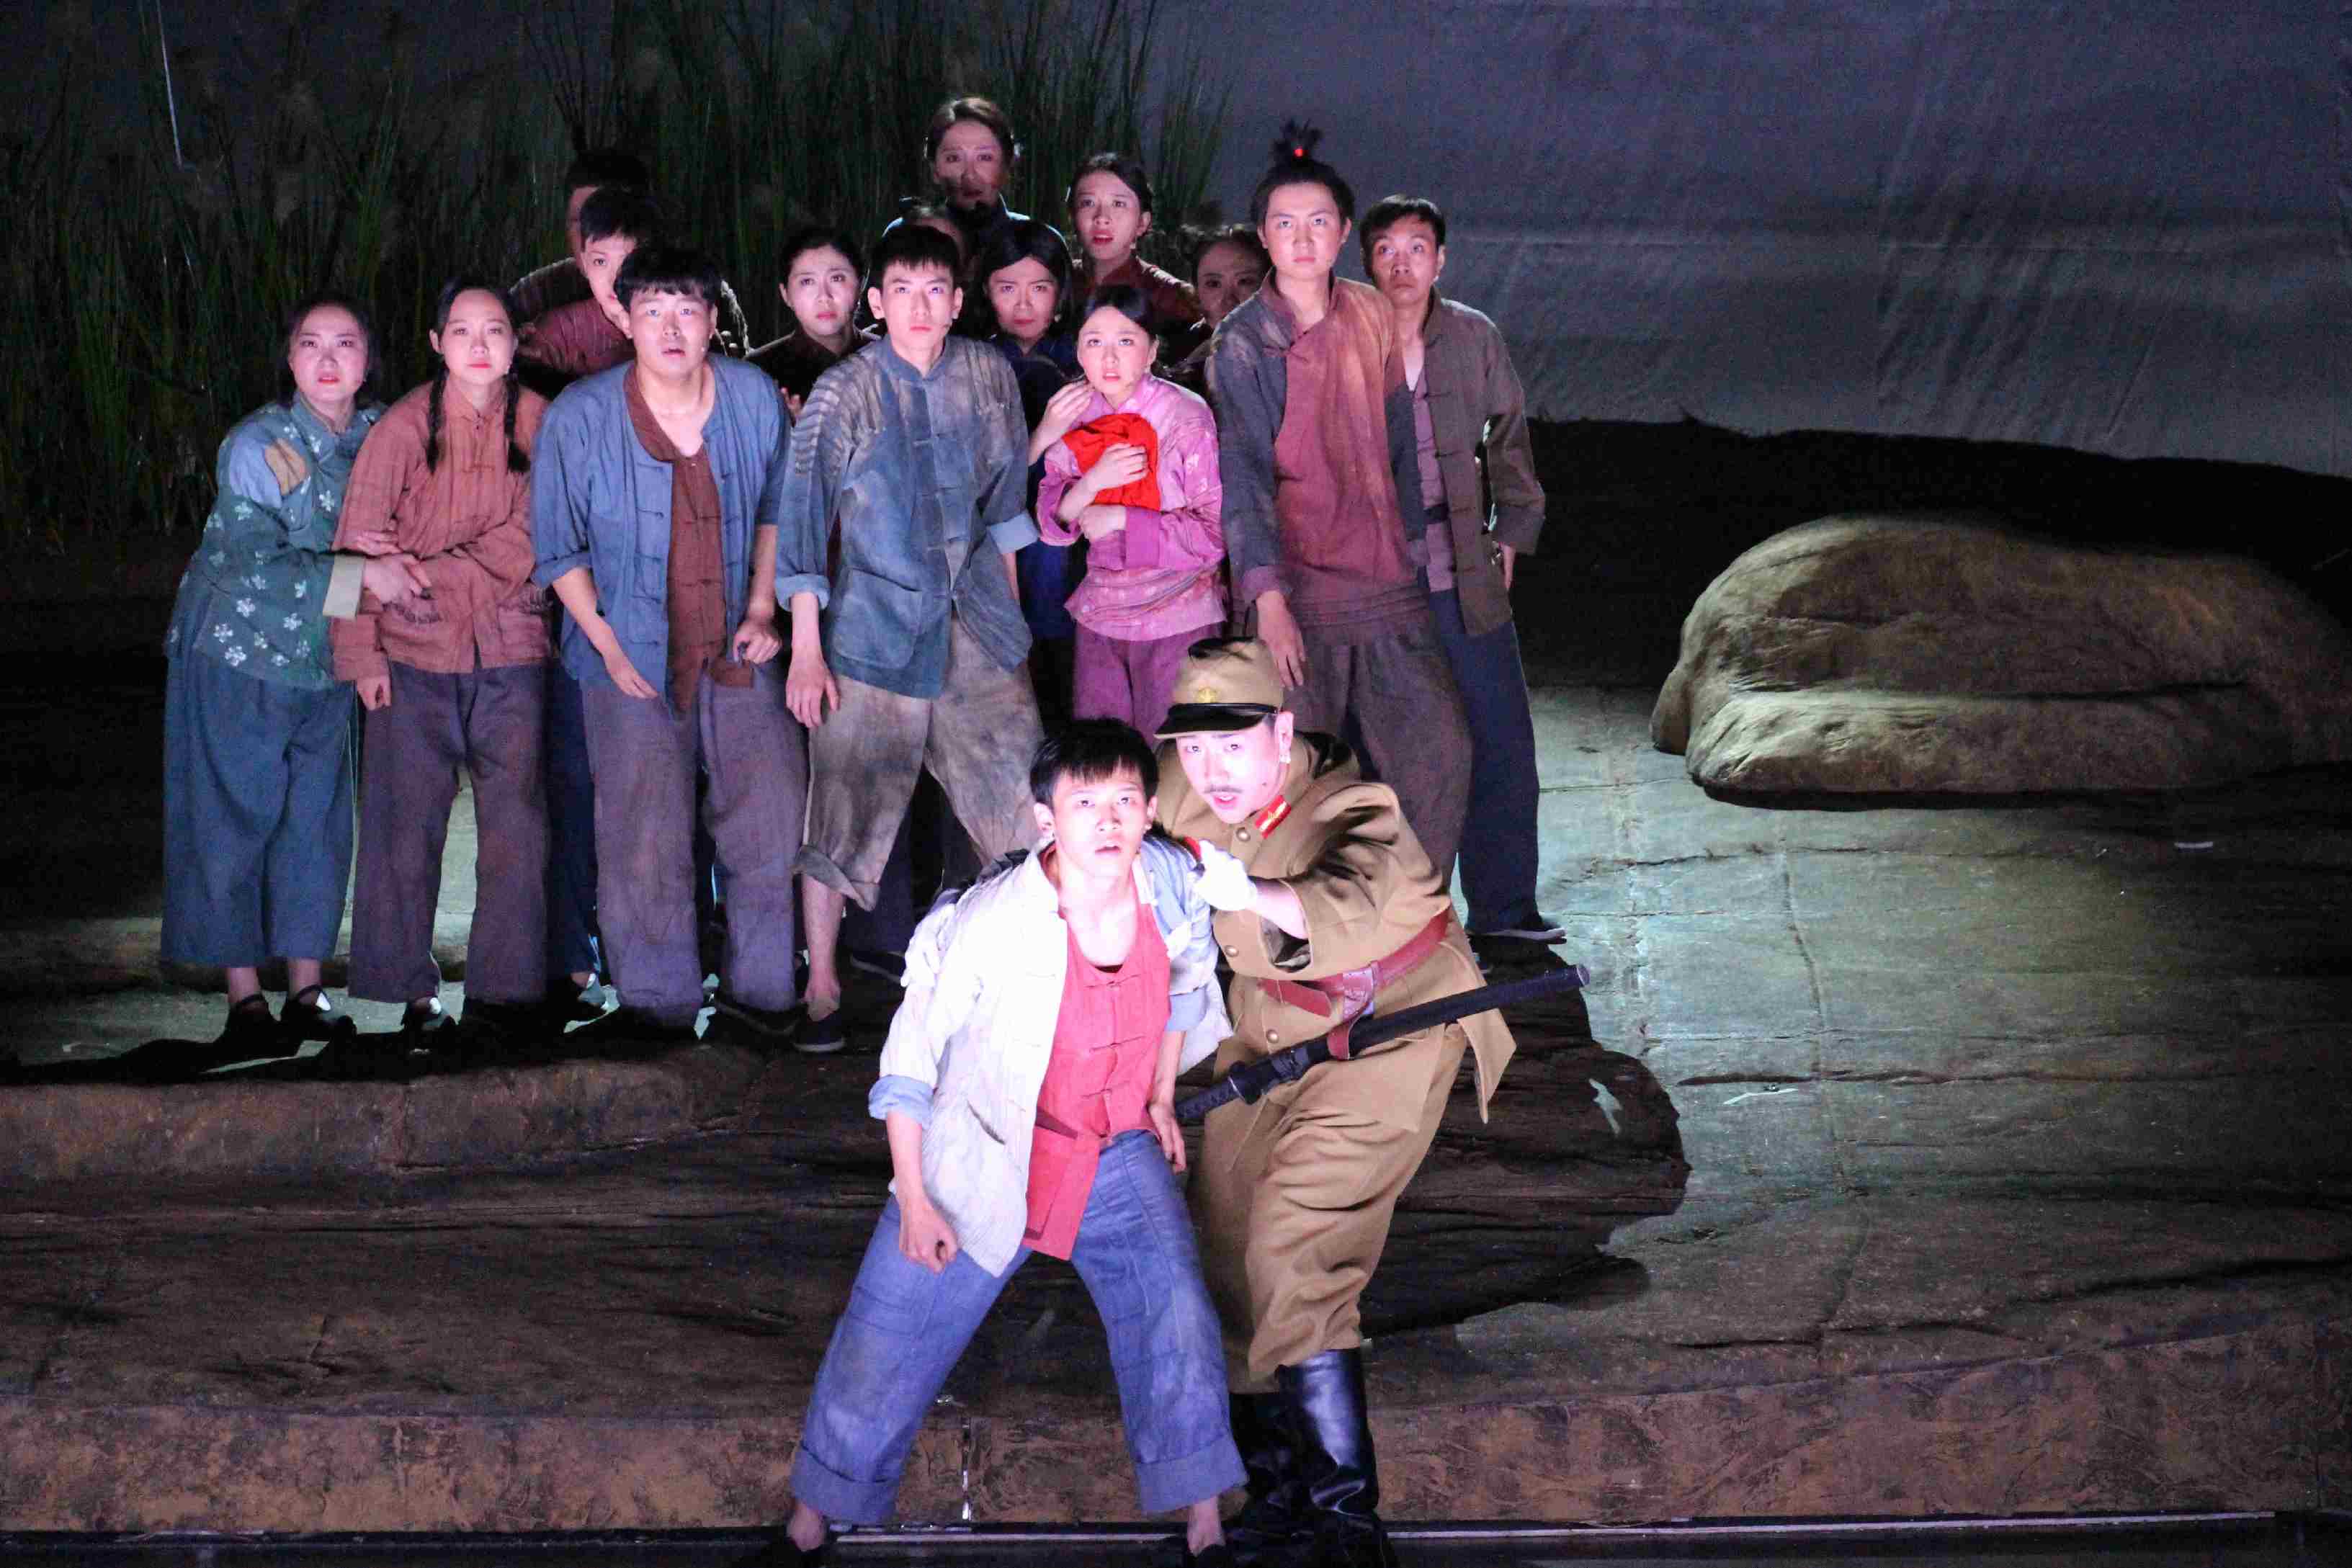 大型原创儿童话剧《小英雄雨来》在京上演